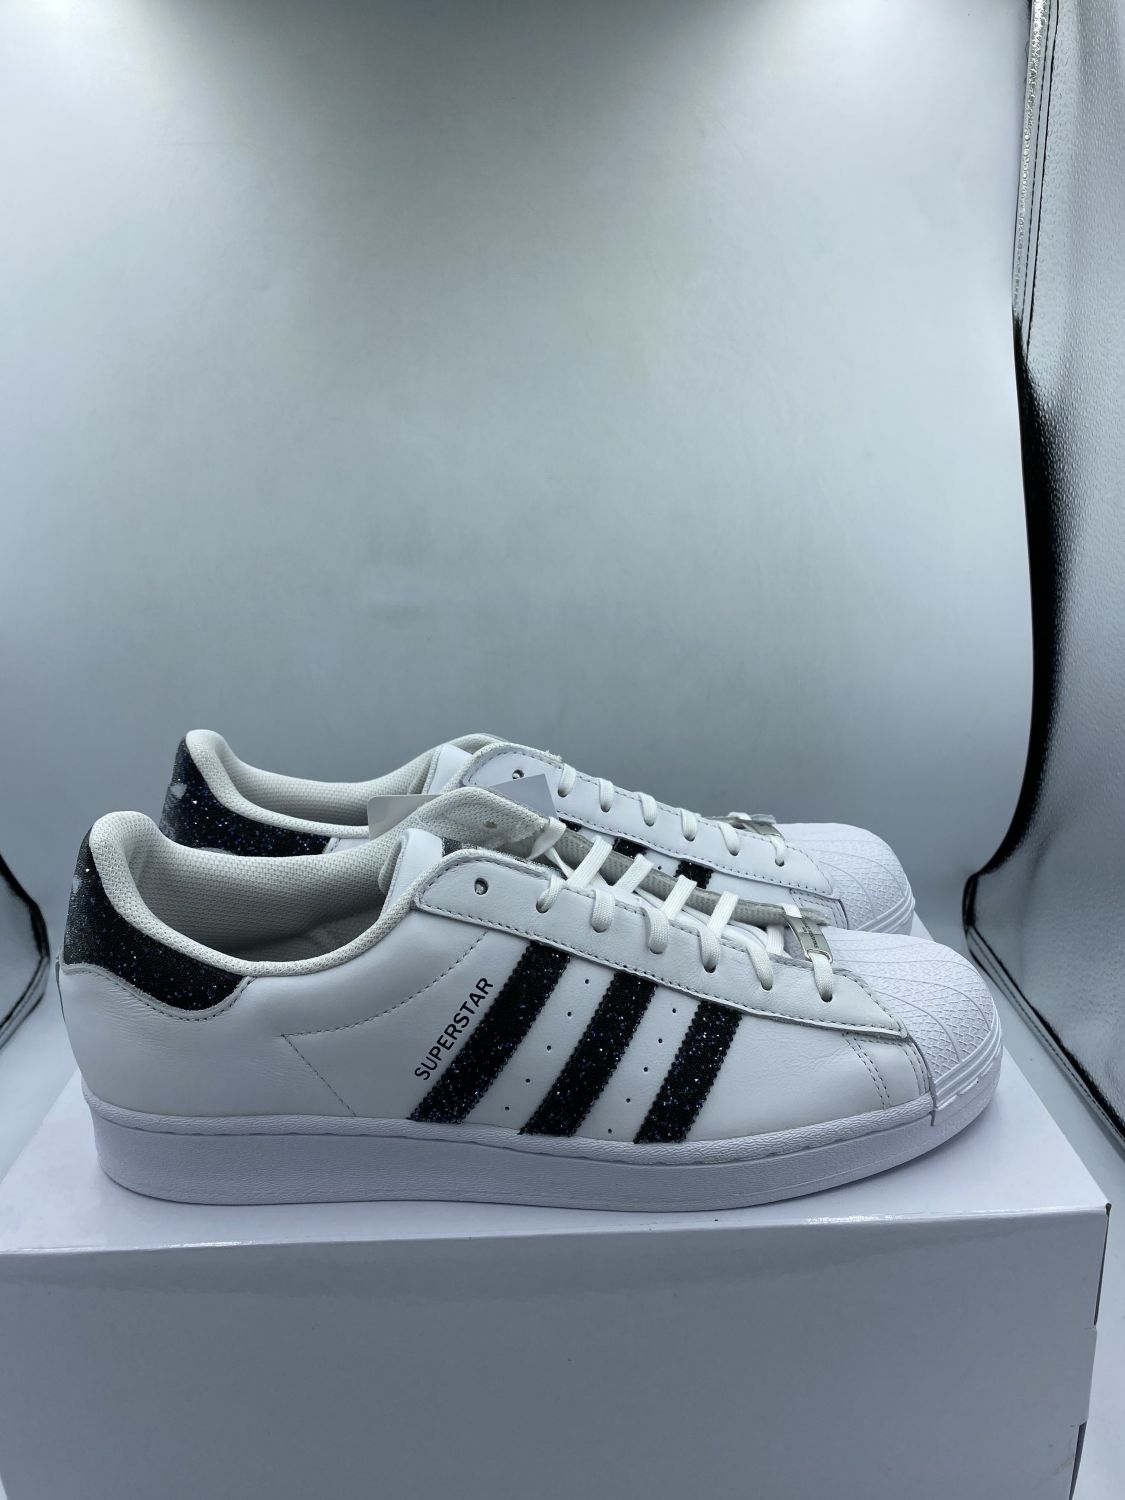 Adidas Superstar Swarovski White Black | AfterMarket